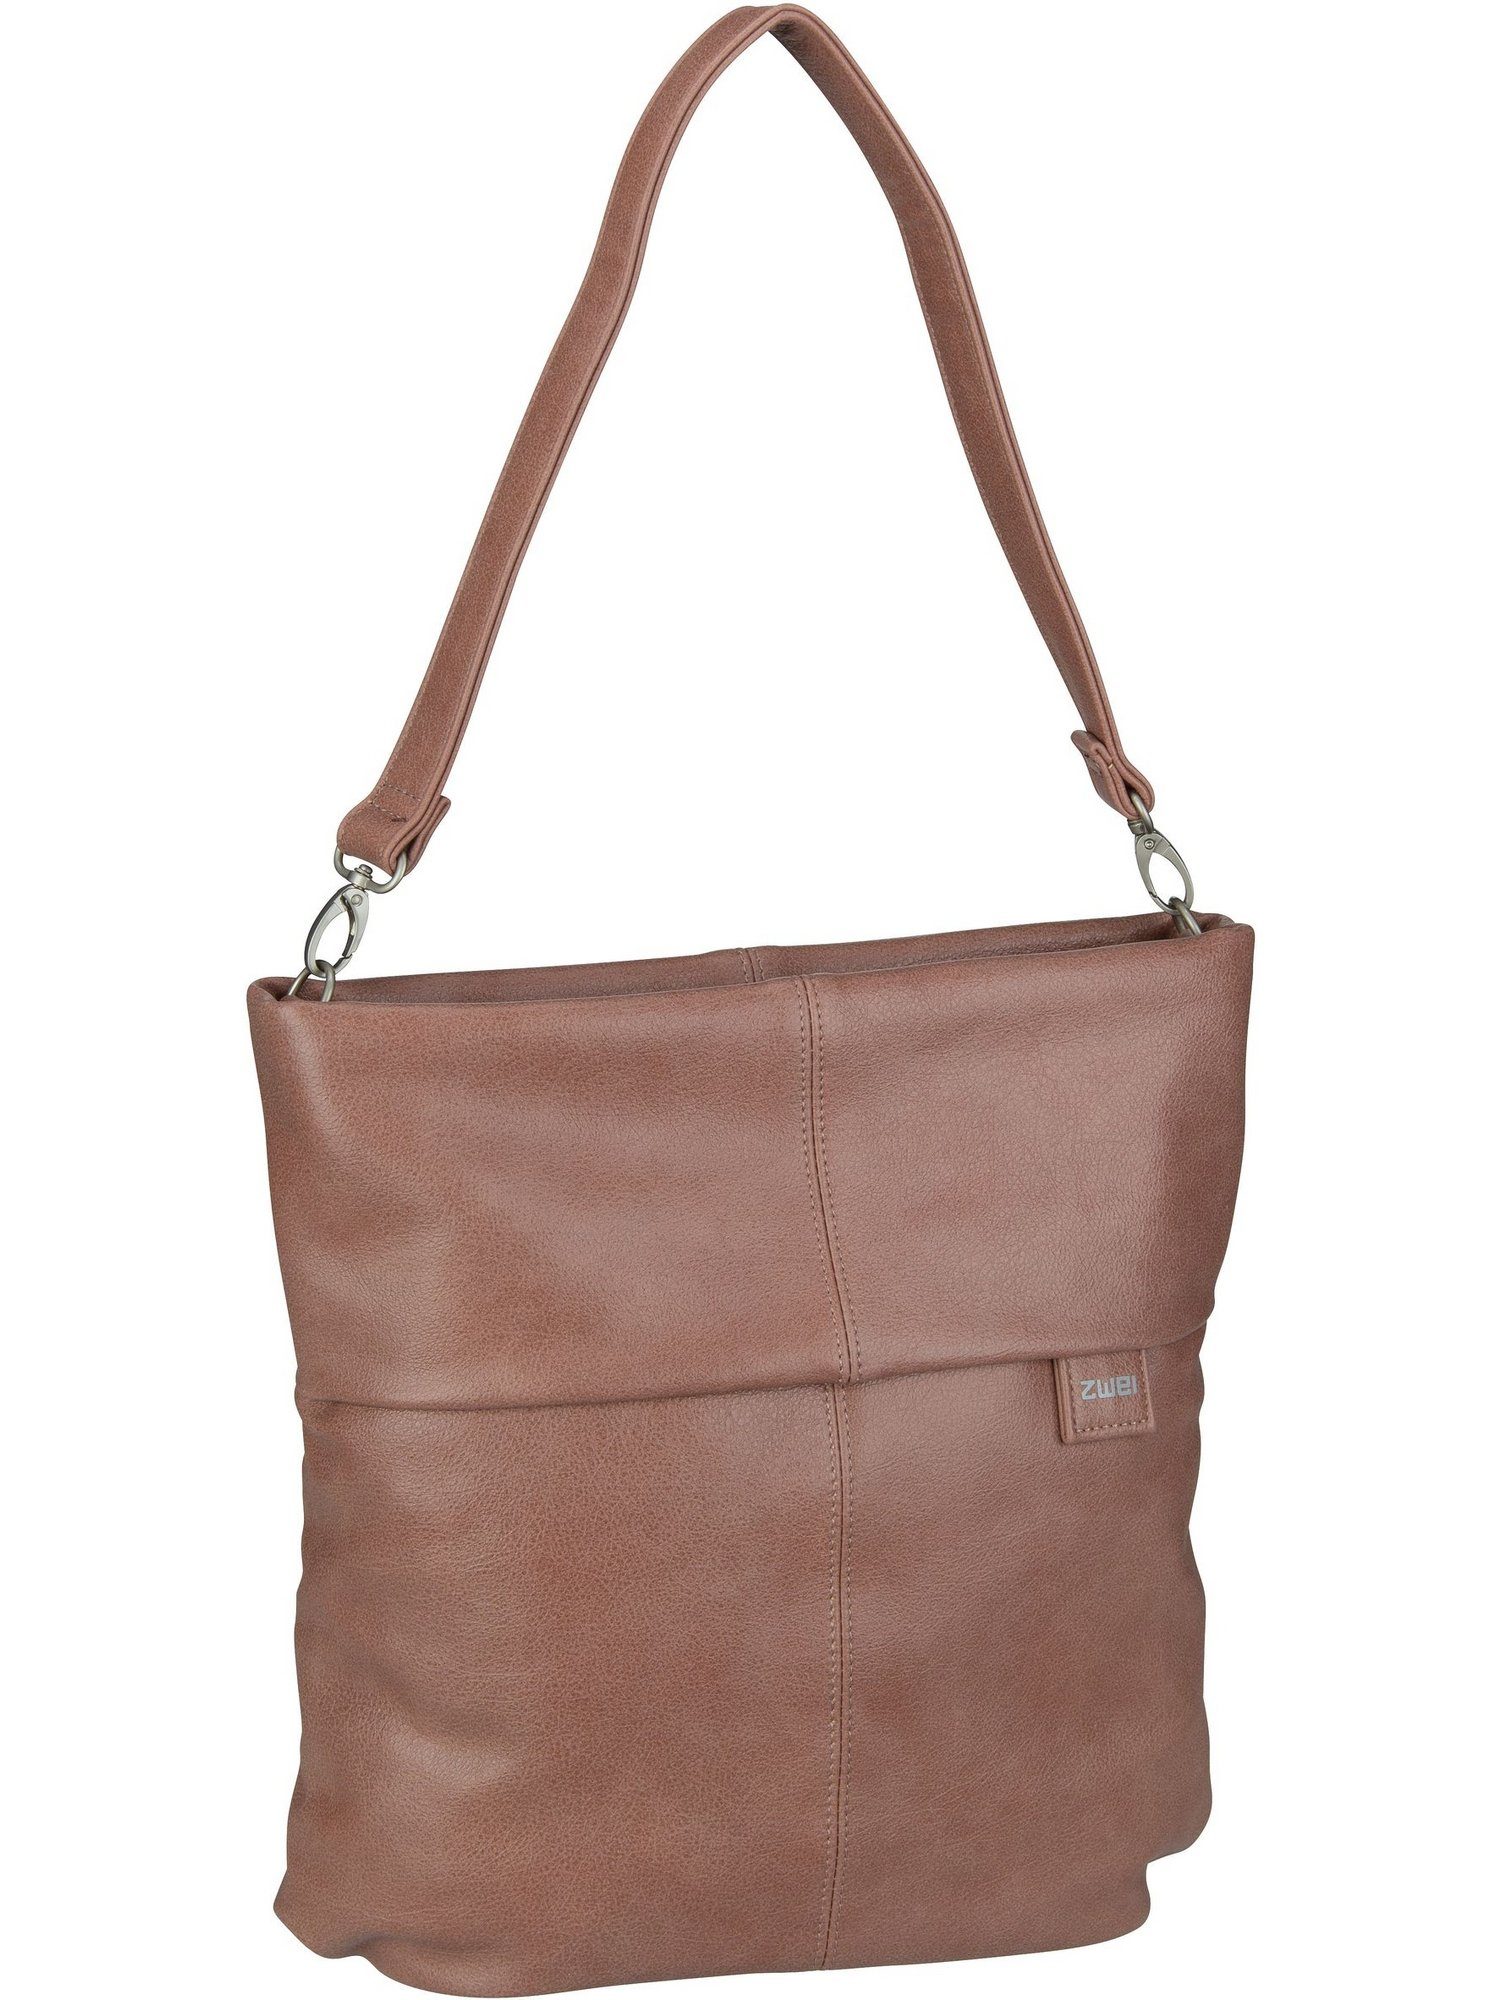 Hobo Zwei Blush Bag Handtasche M12, Mademoiselle